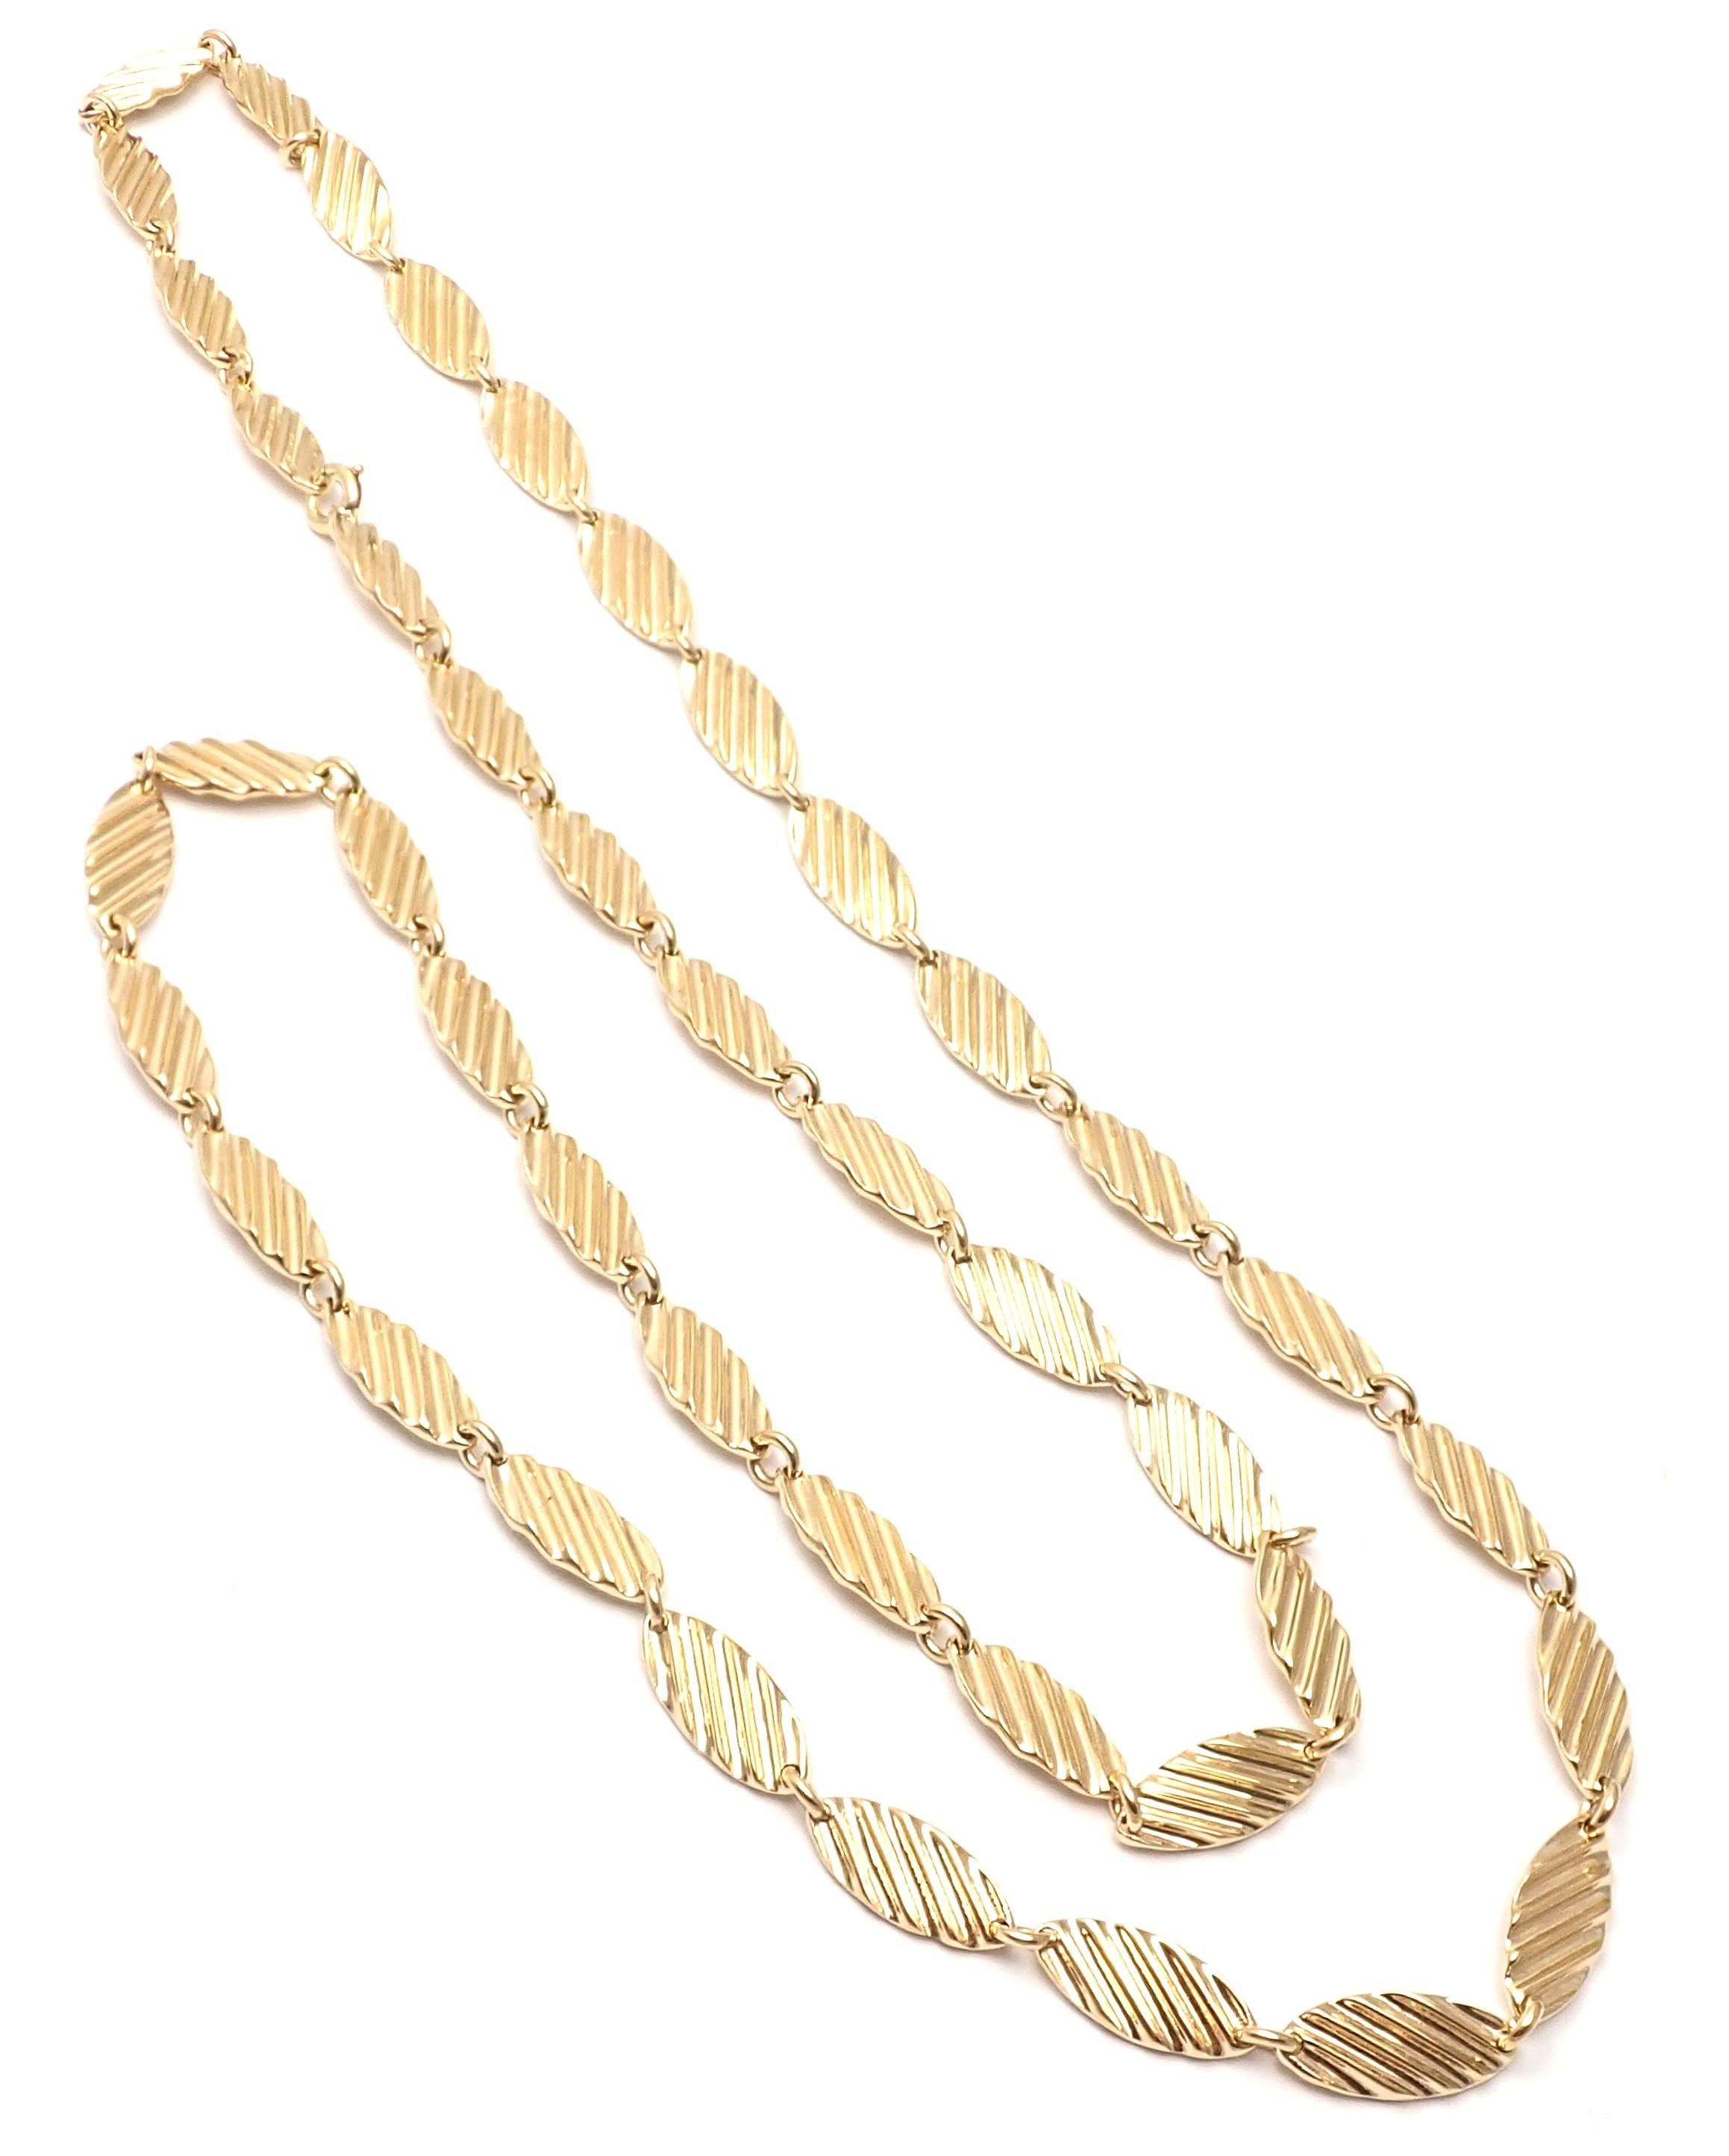 Women's or Men's Vintage Van Cleef & Arpels Long Yellow Gold Link Necklace